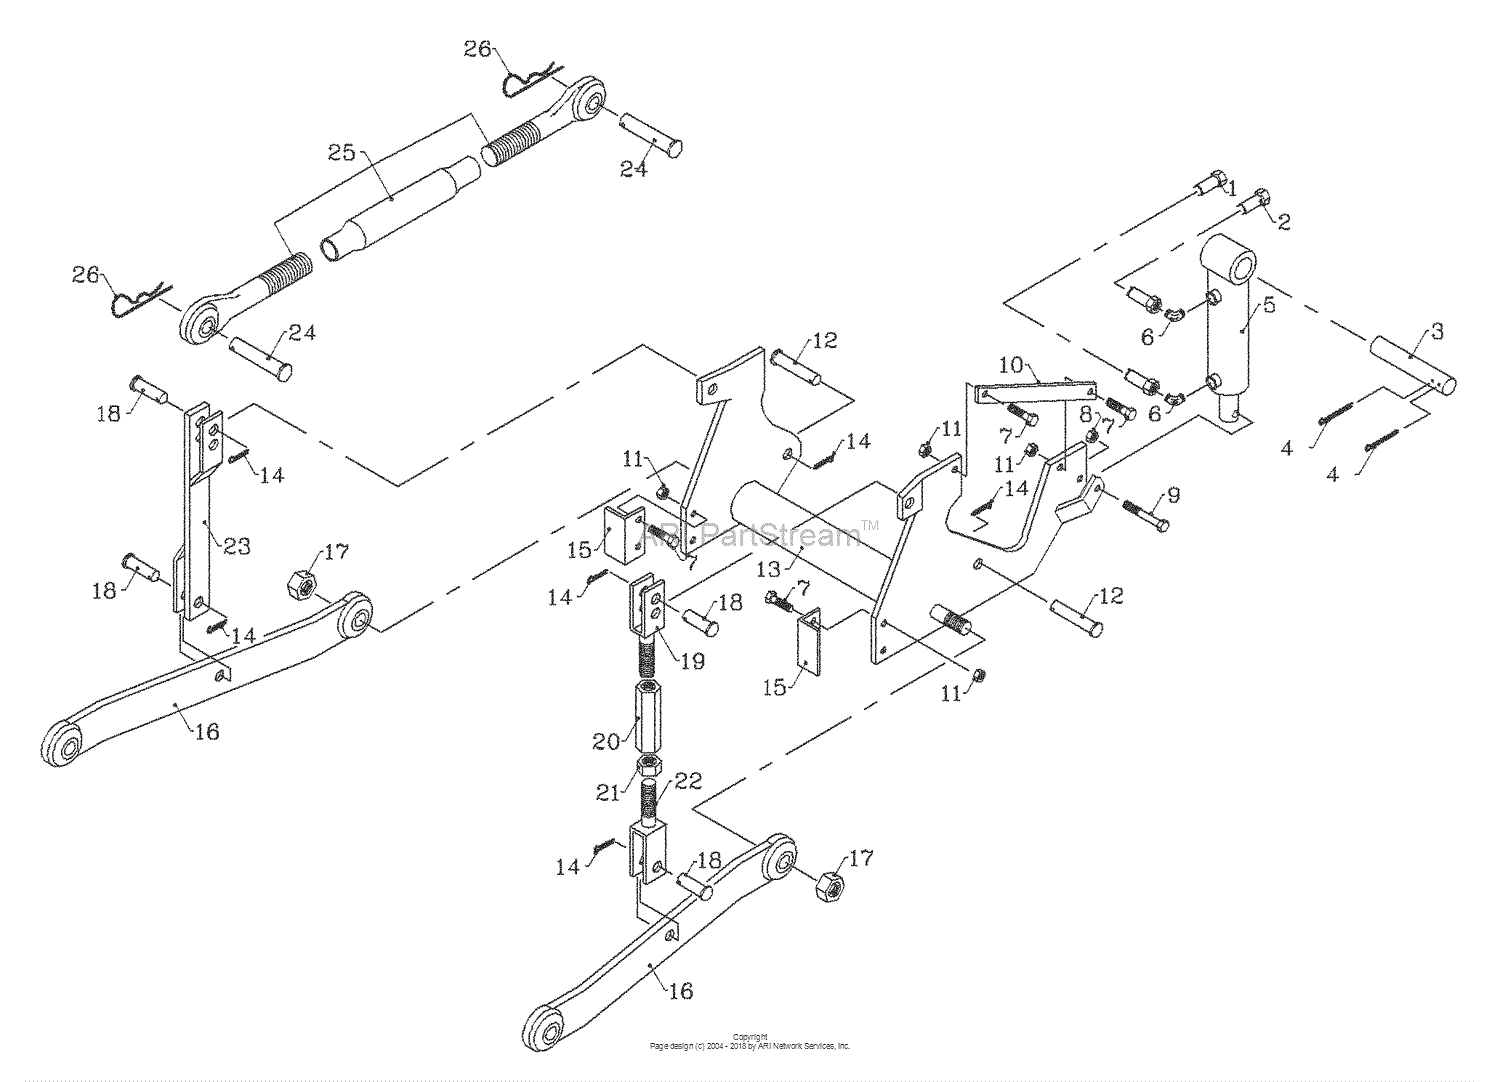 Bunton, Bobcat, Ryan 7570040 28HP Kubota Diesel Parts Diagram for 3